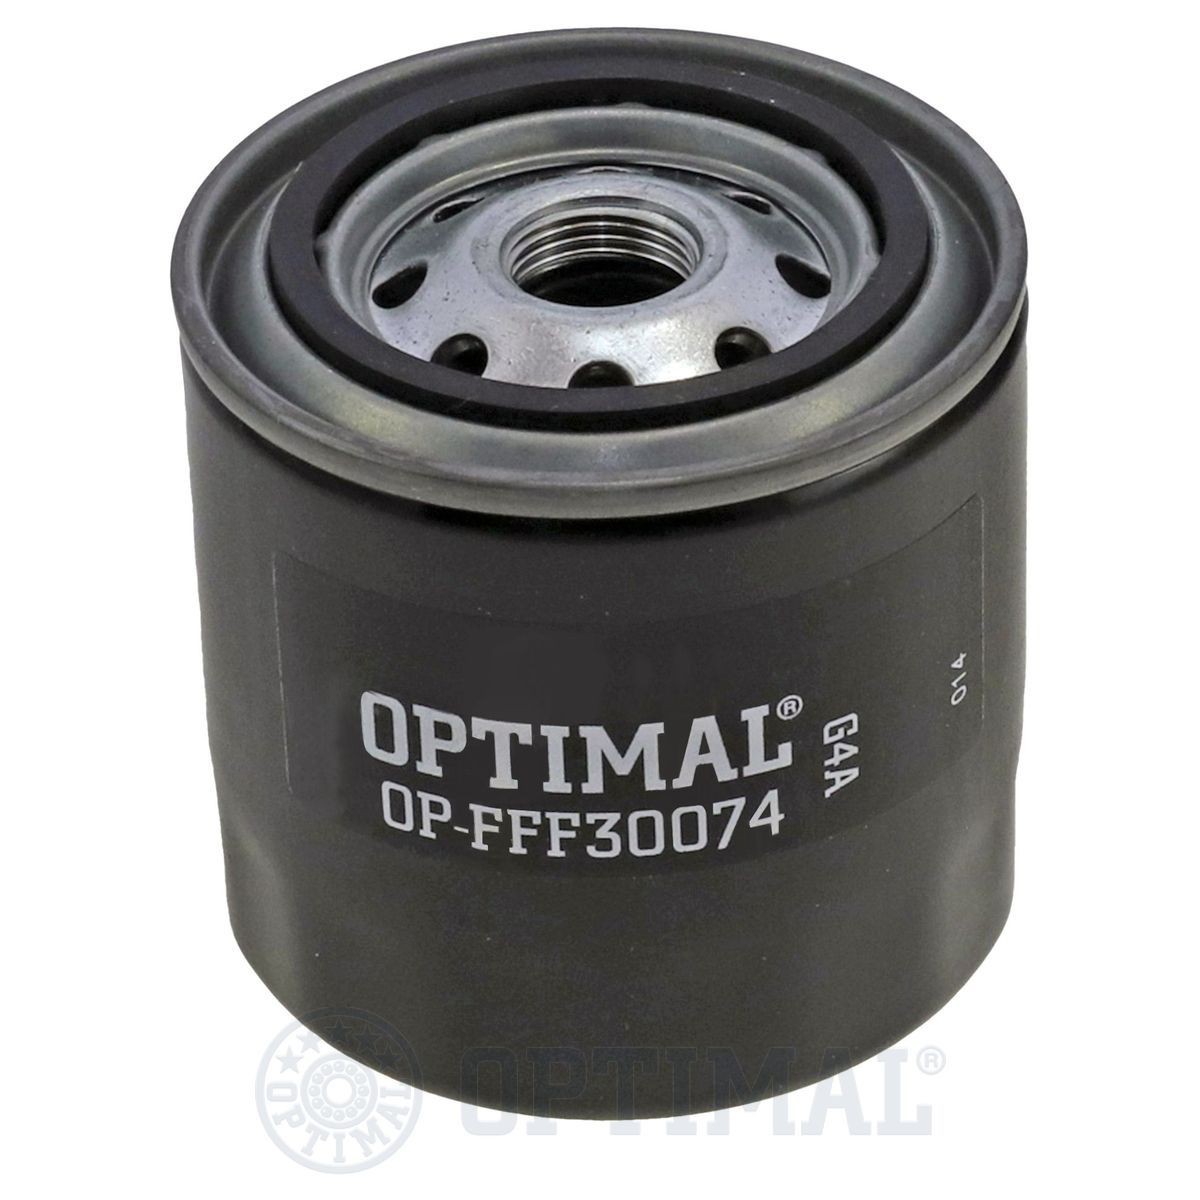 OPTIMAL OP-FFF30074 Fuel filter 2-90654-910-0